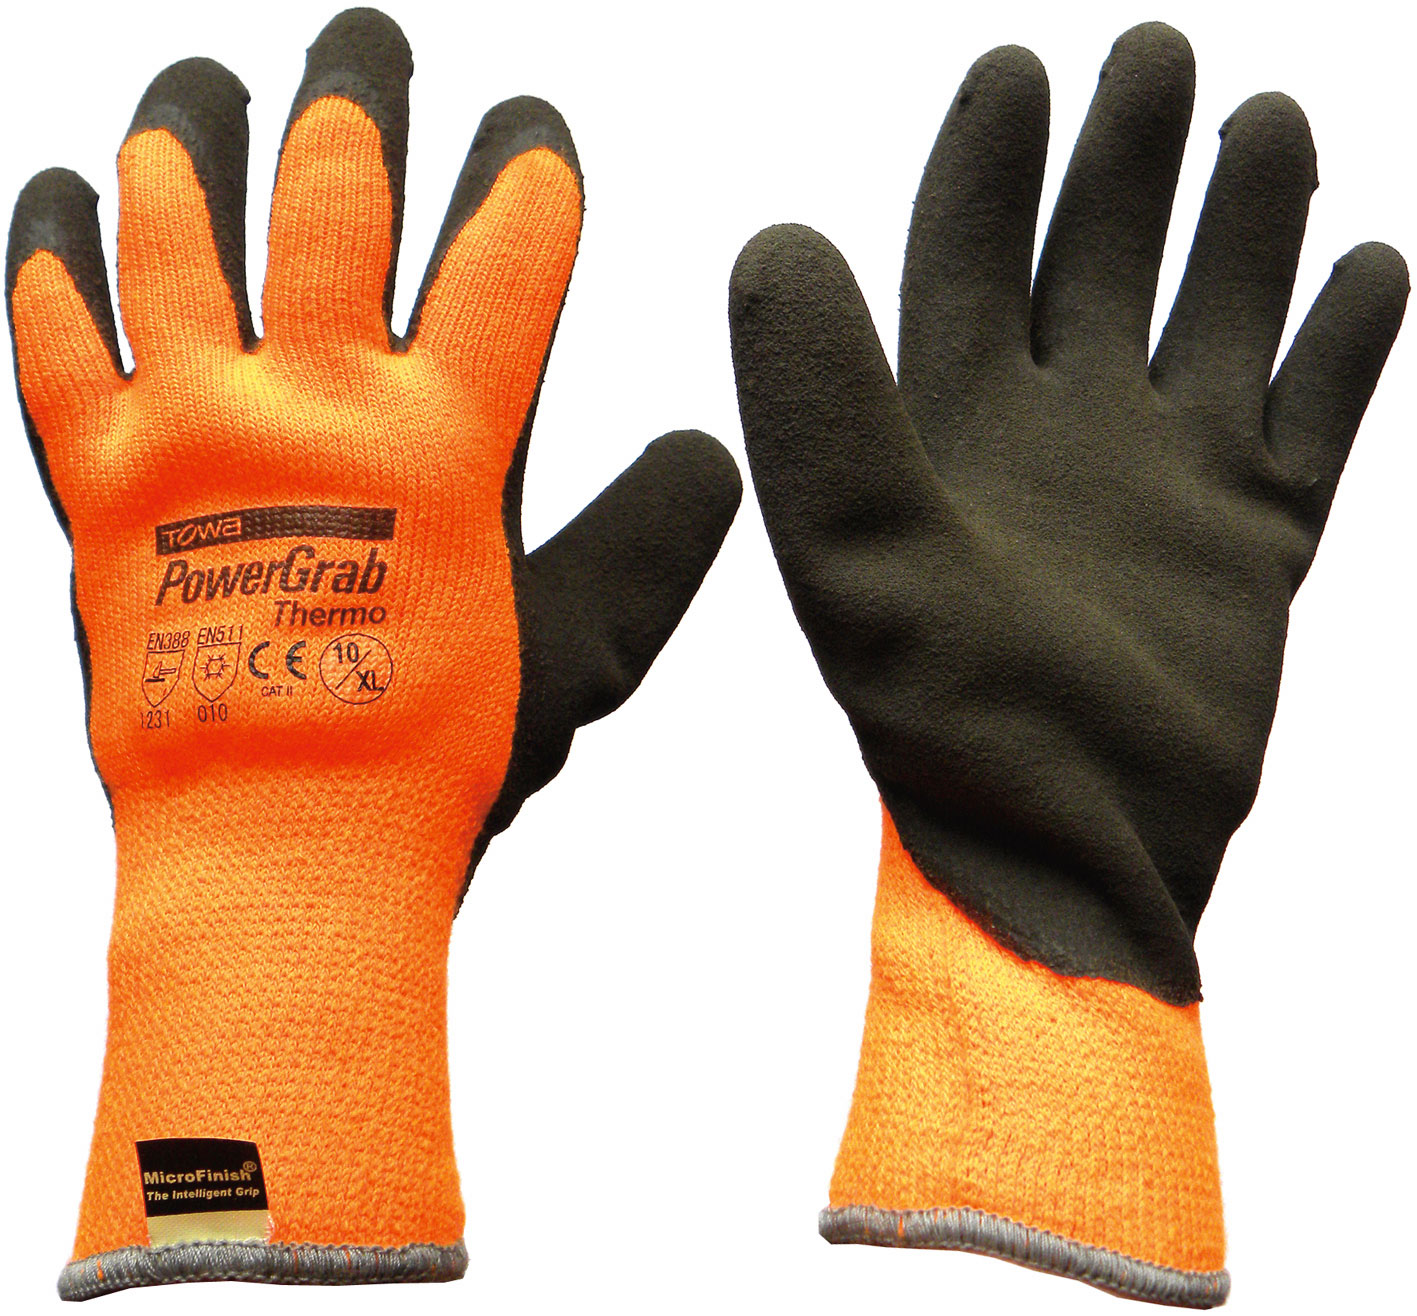 DISPLAY PK  P/Grab Thermo ORANGE Gloves X-LARGE Towa